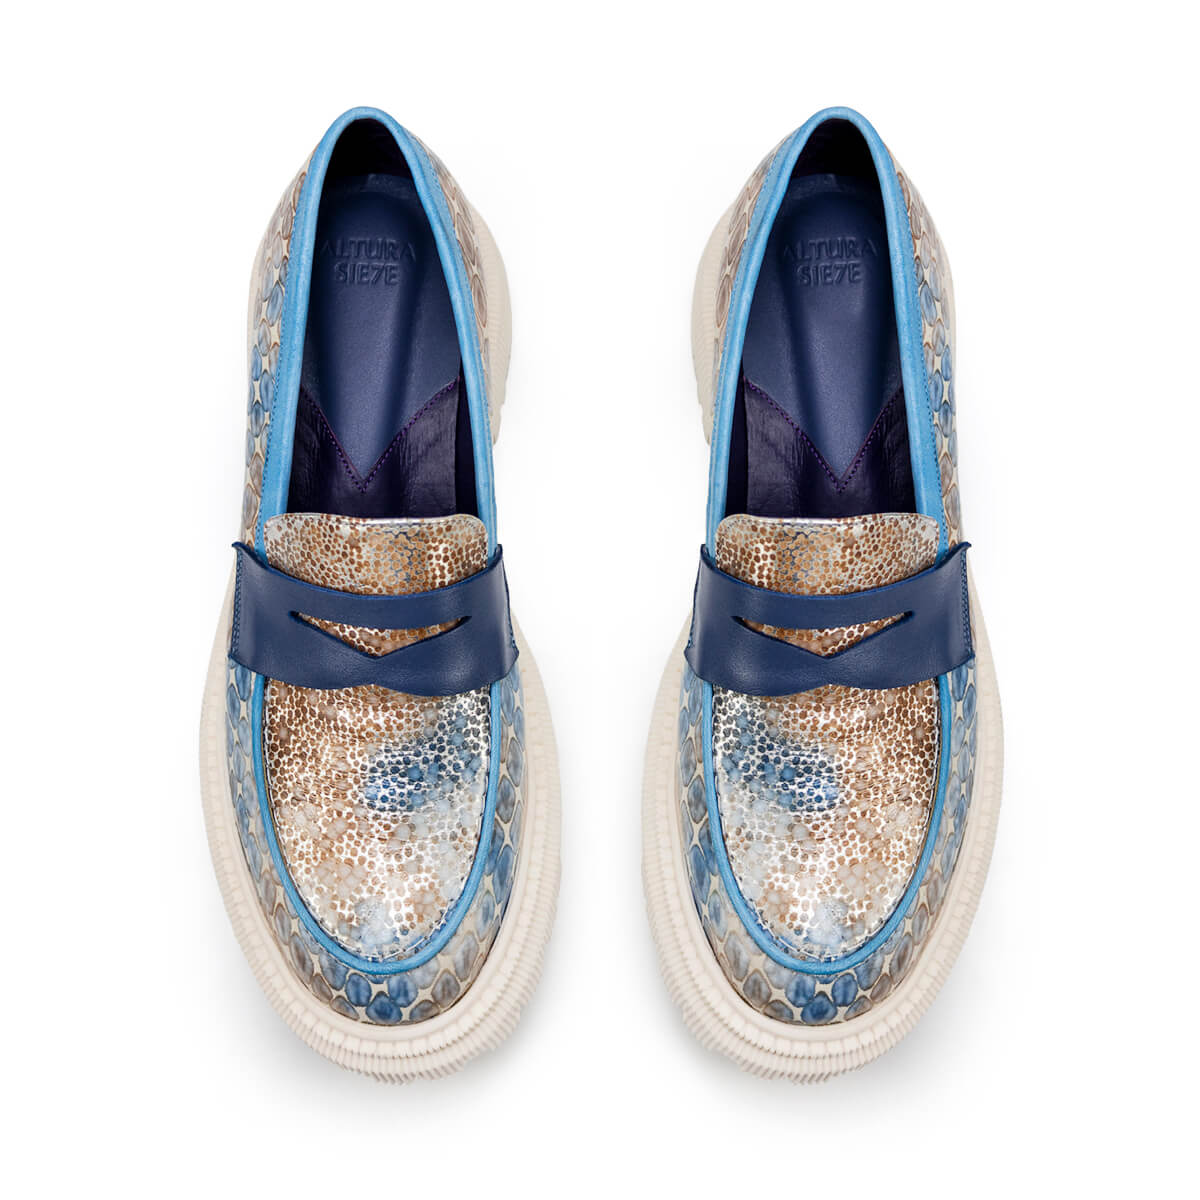 Blue Star women's shoe